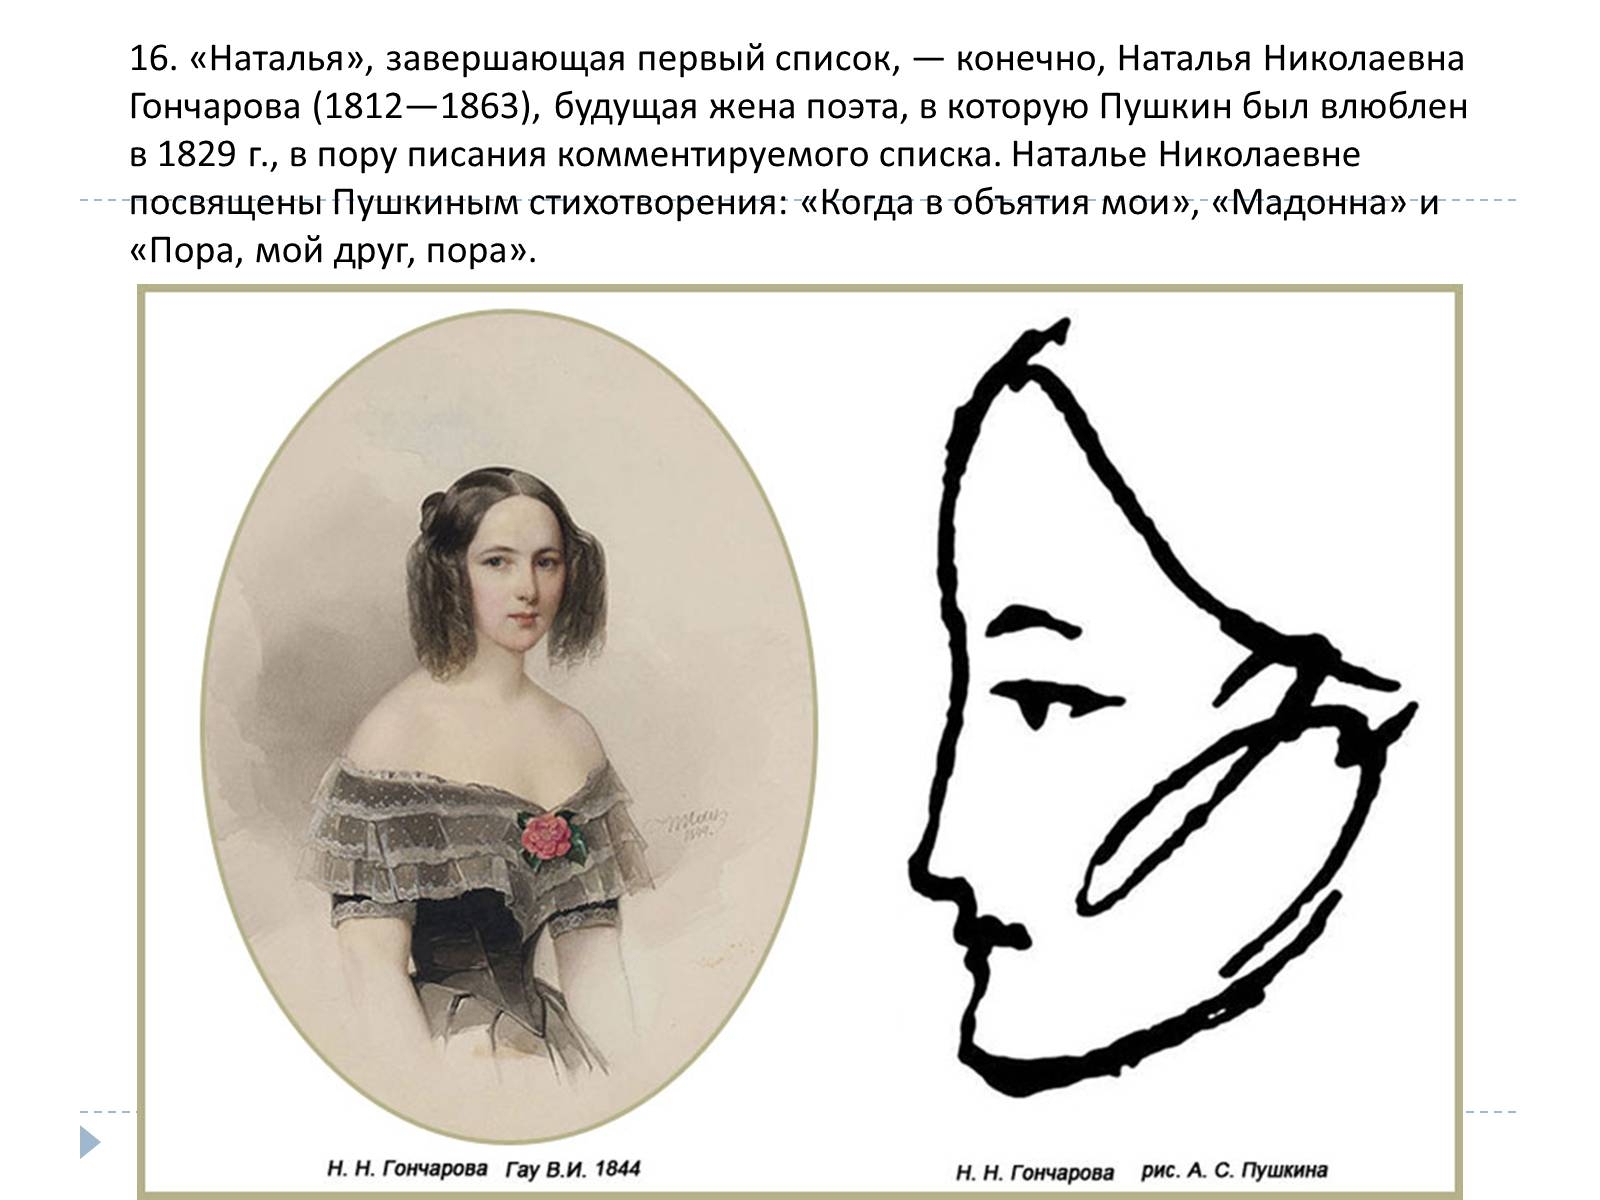 Наталья Николаевна Гончарова 1829